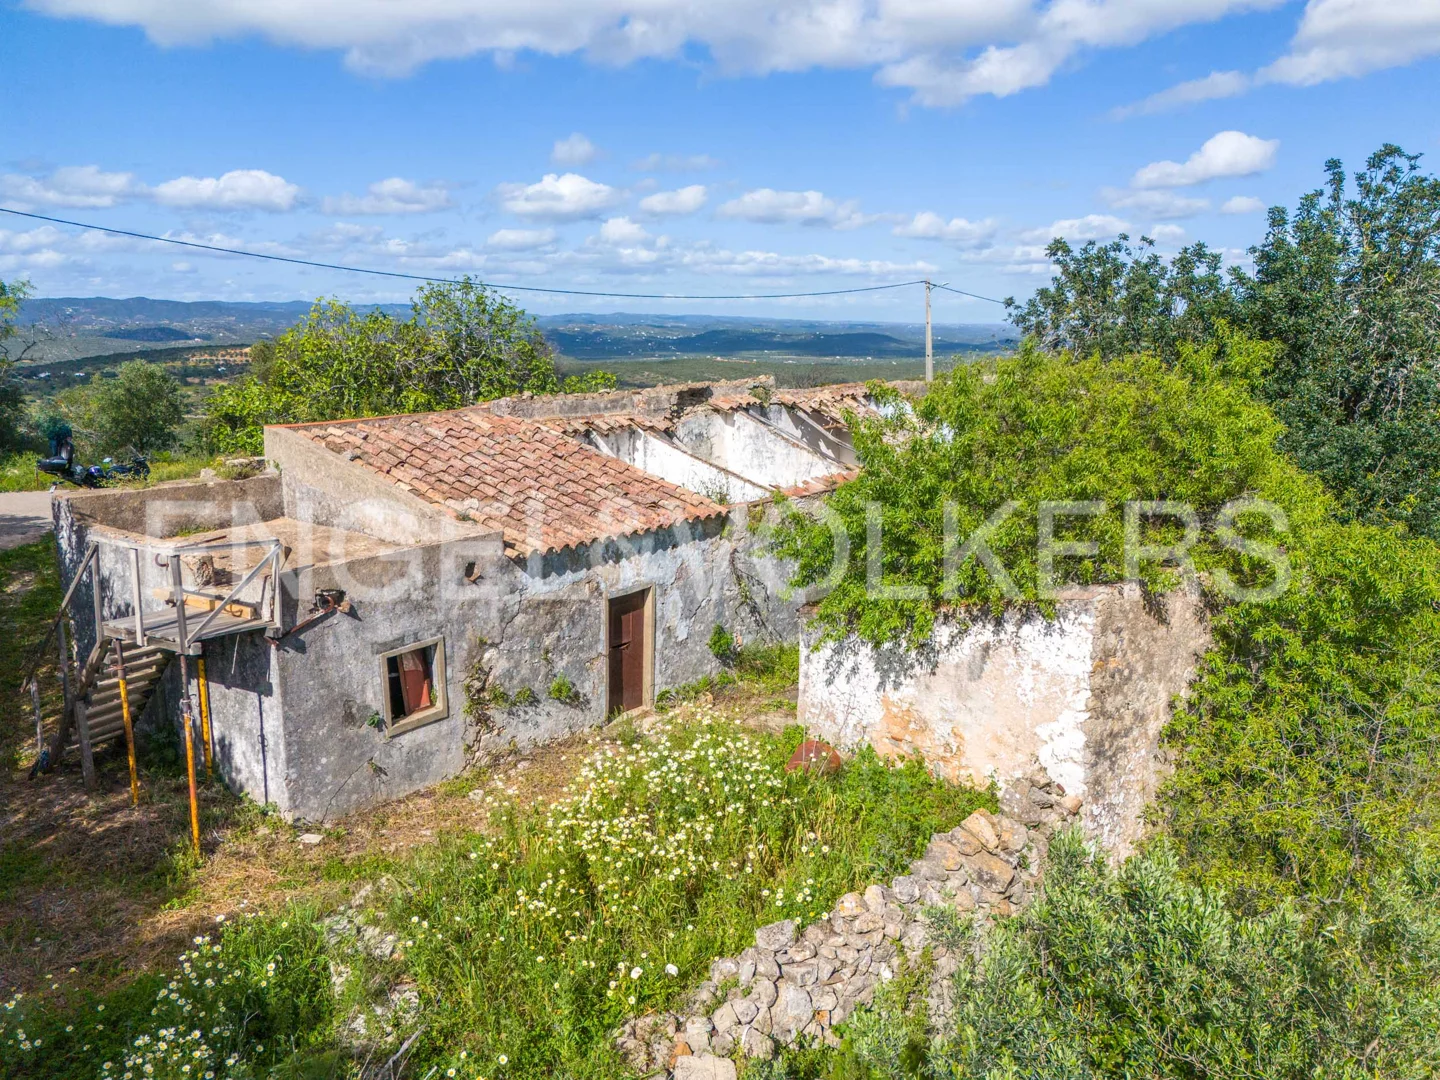 Investimento – Terreno com ruína em Moncarapacho